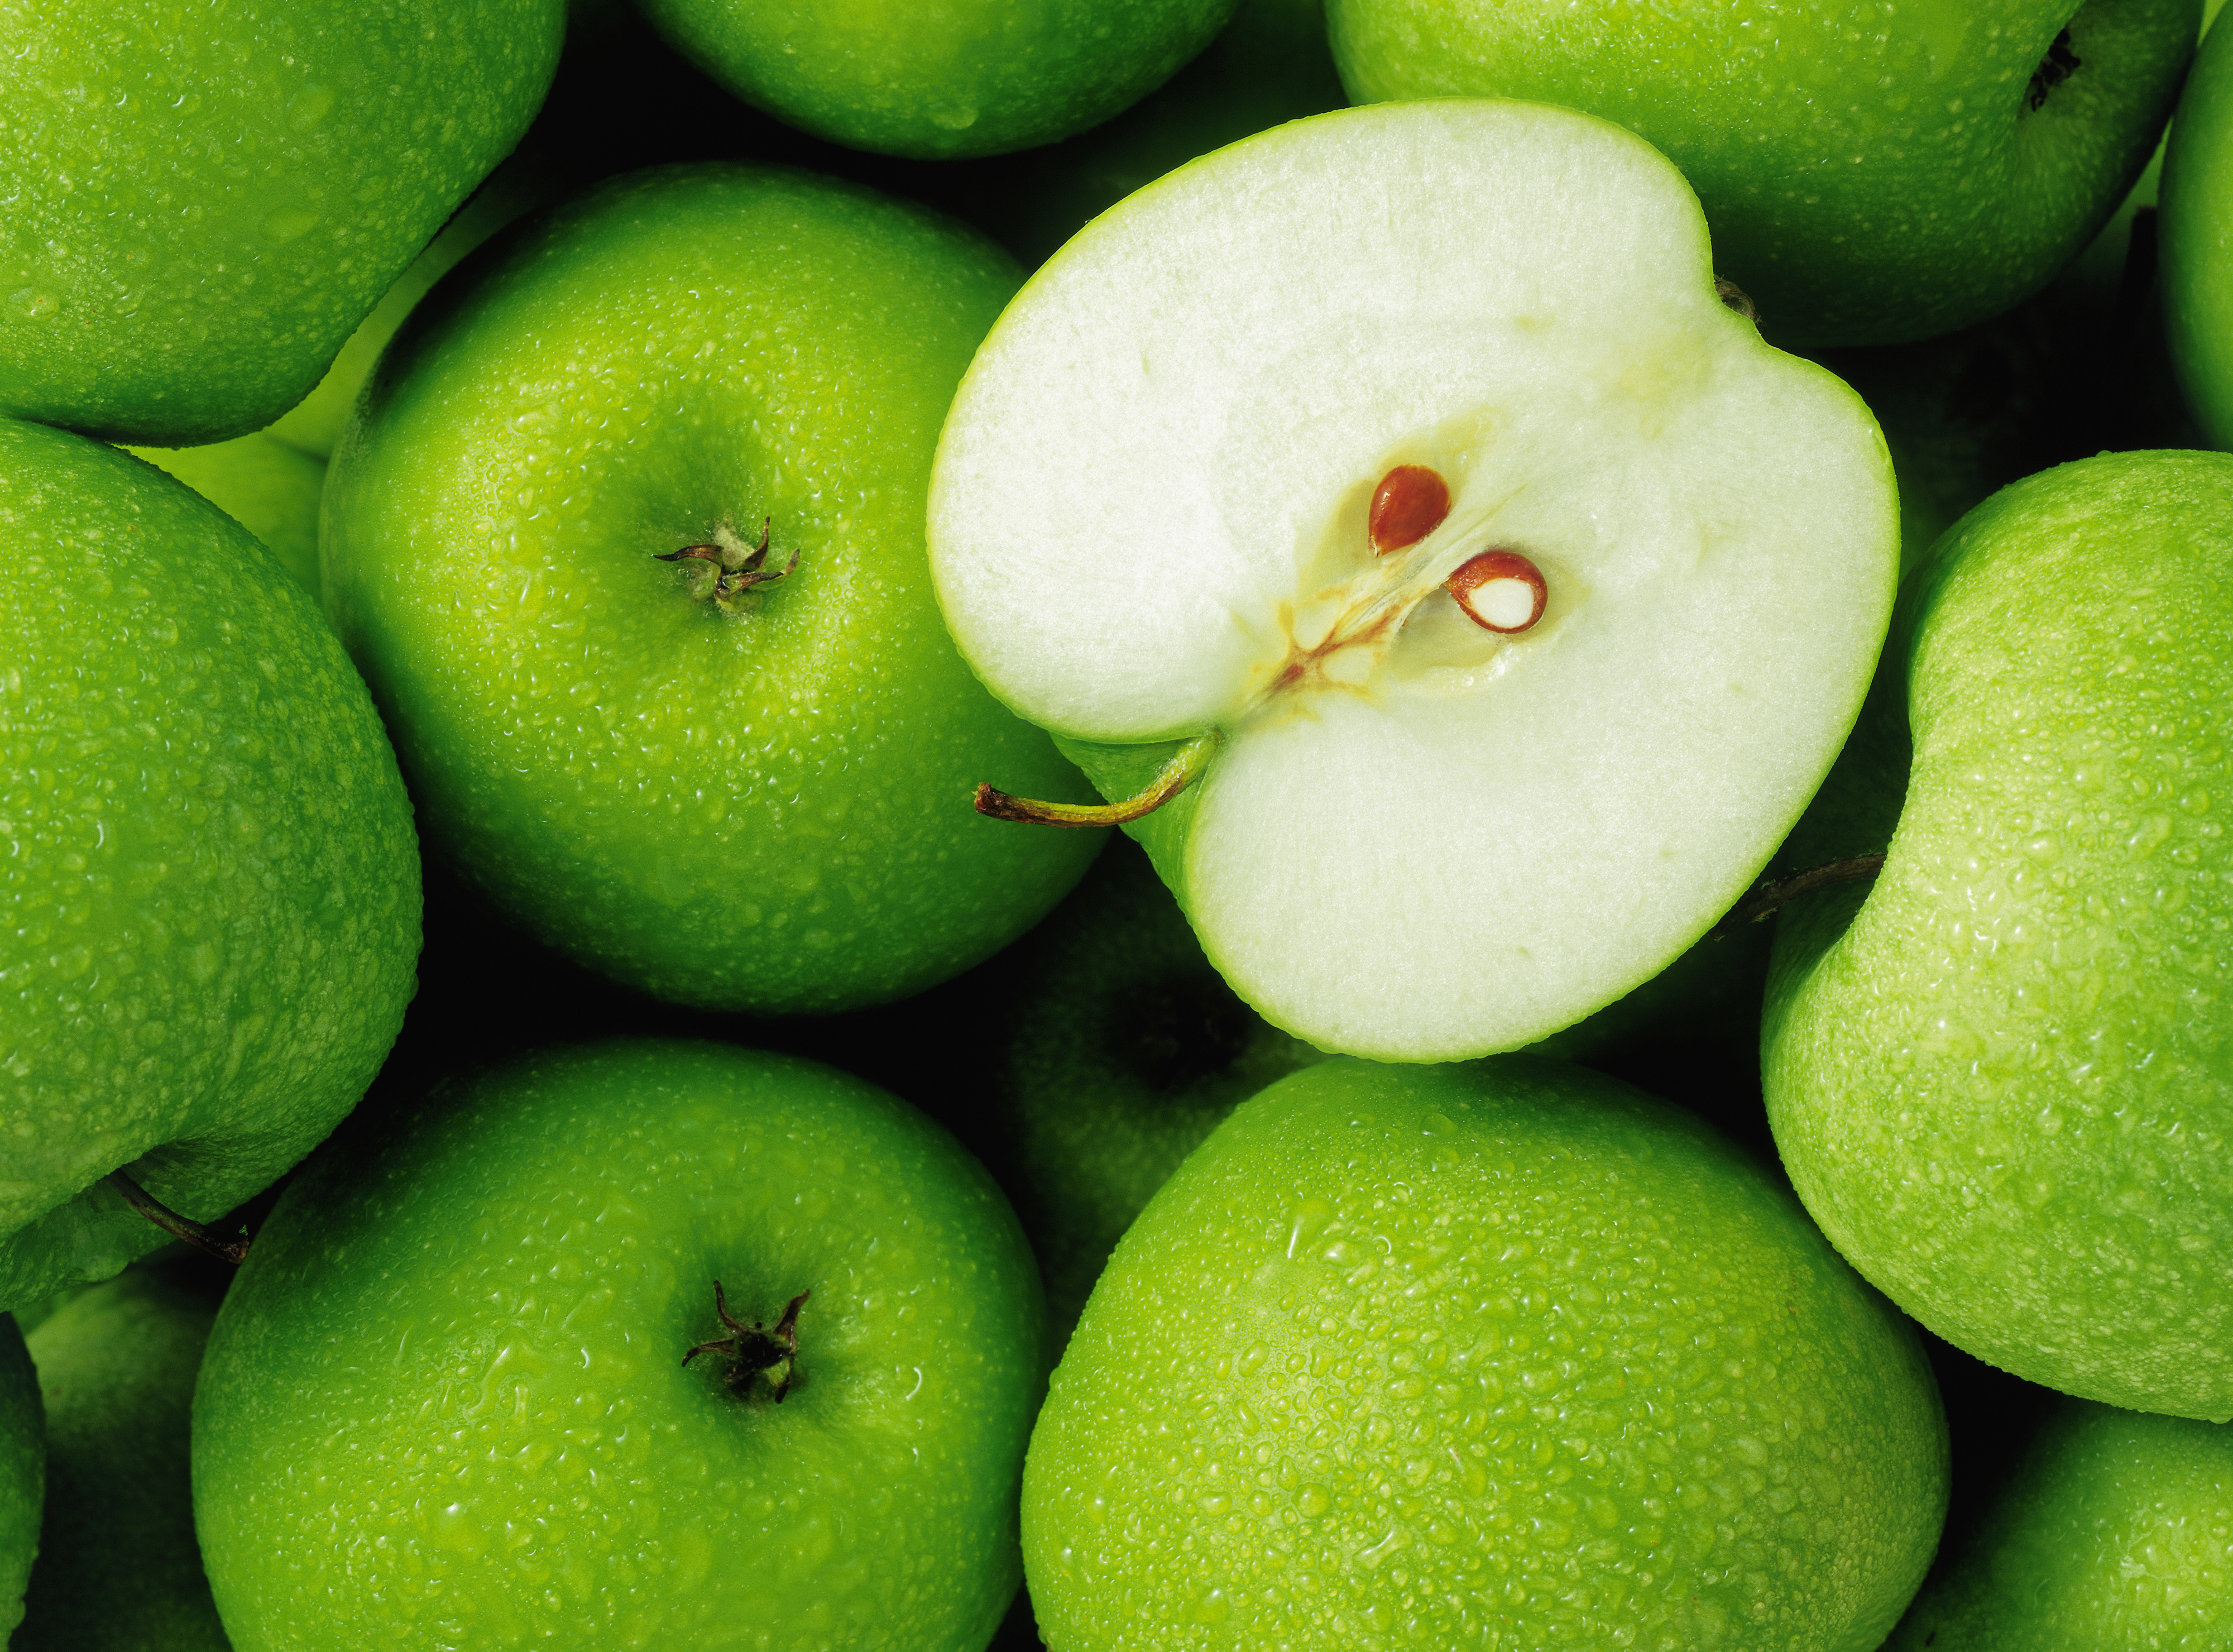 Яблоко плодовый. Яблоки Грин Грин. Яблоки зеленые. Яблоко в разрезе. Сочное яблоко.